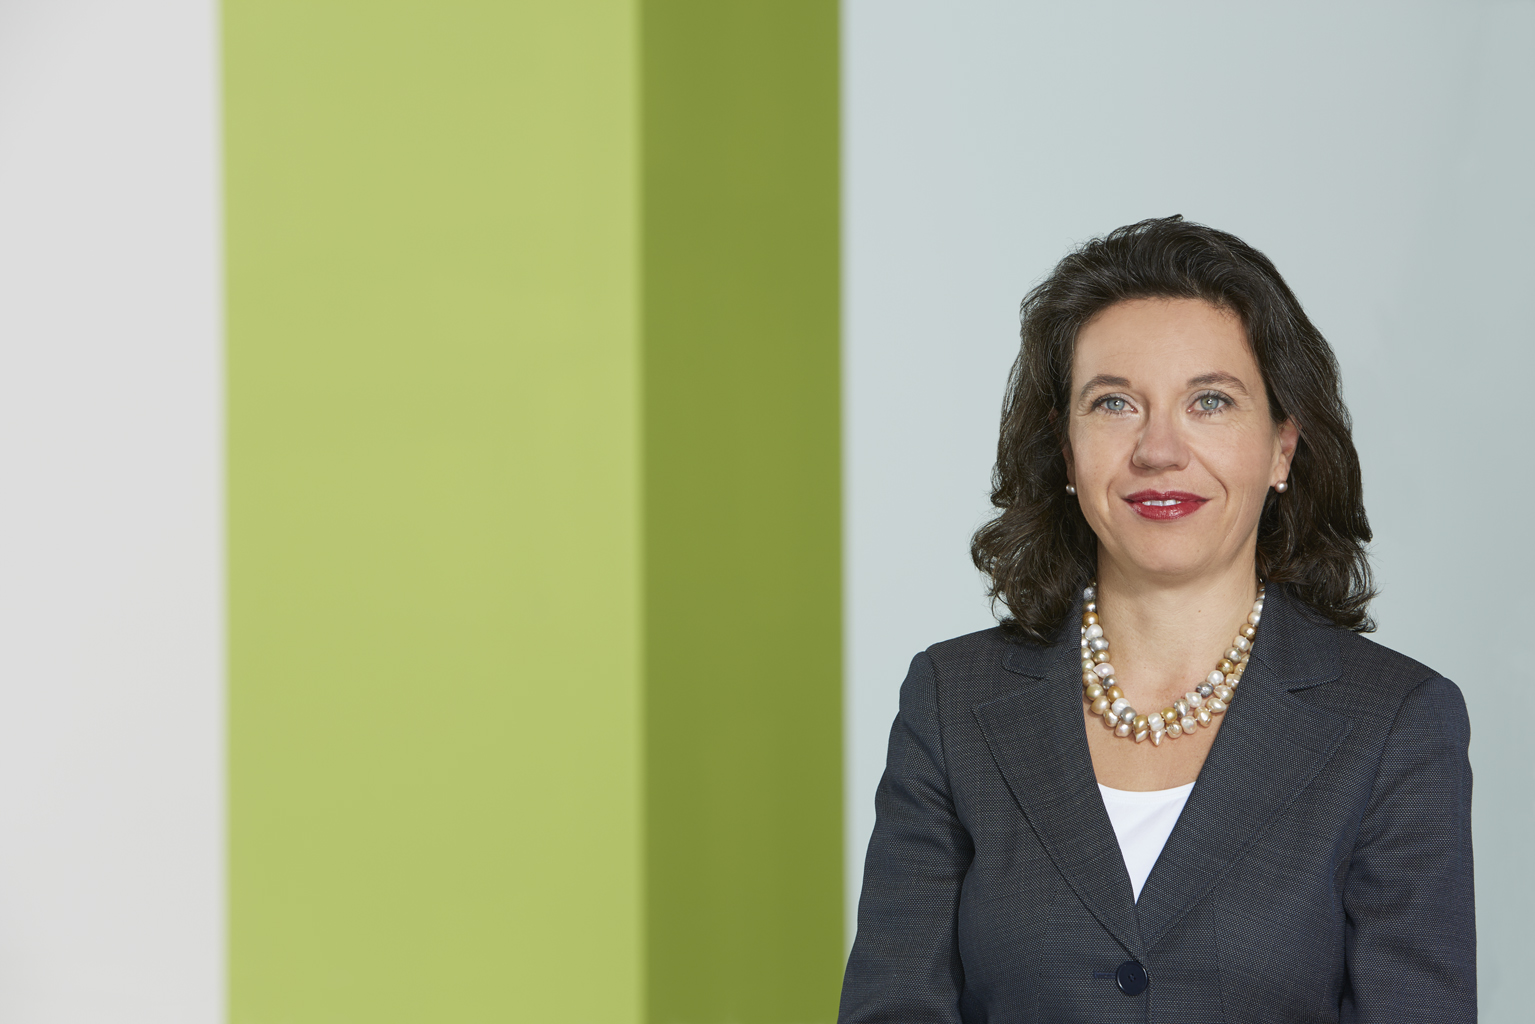 Regina Brueckner, owner and CEO of Brueckner.